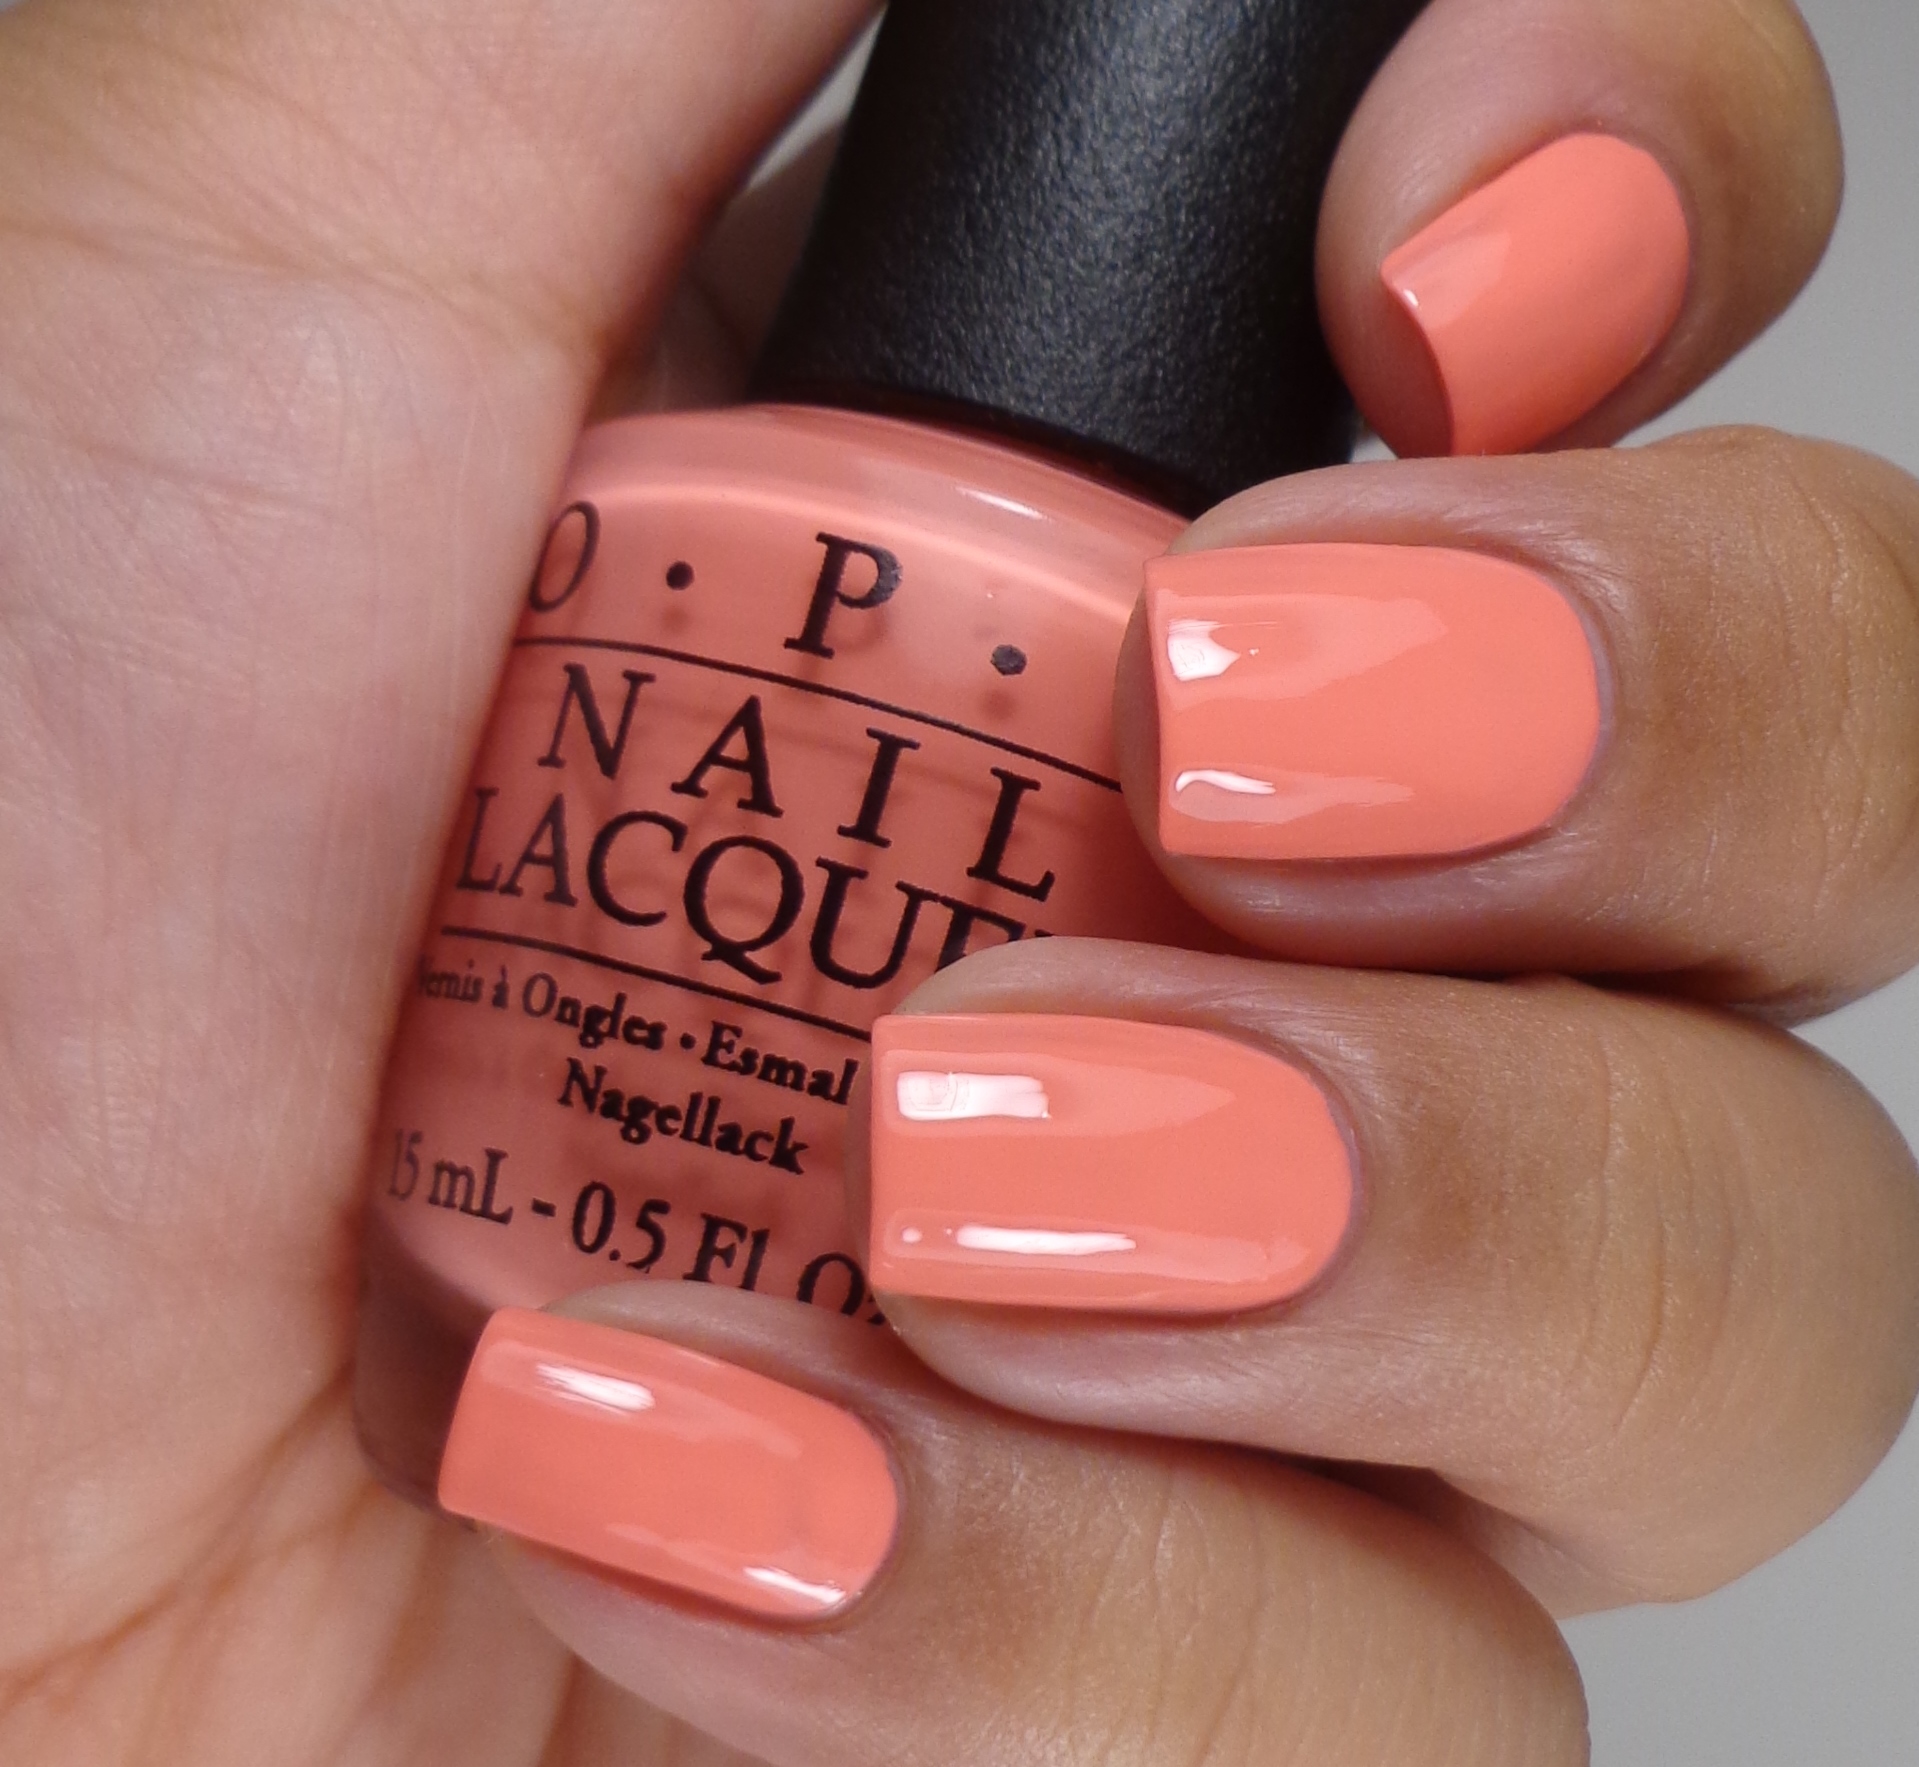 Маникюр цвет лака для ногтей. OPI гель лак коралловый. Шеллак персиковый. Персиковый лак для ногтей. Маникюр персикового цвета.